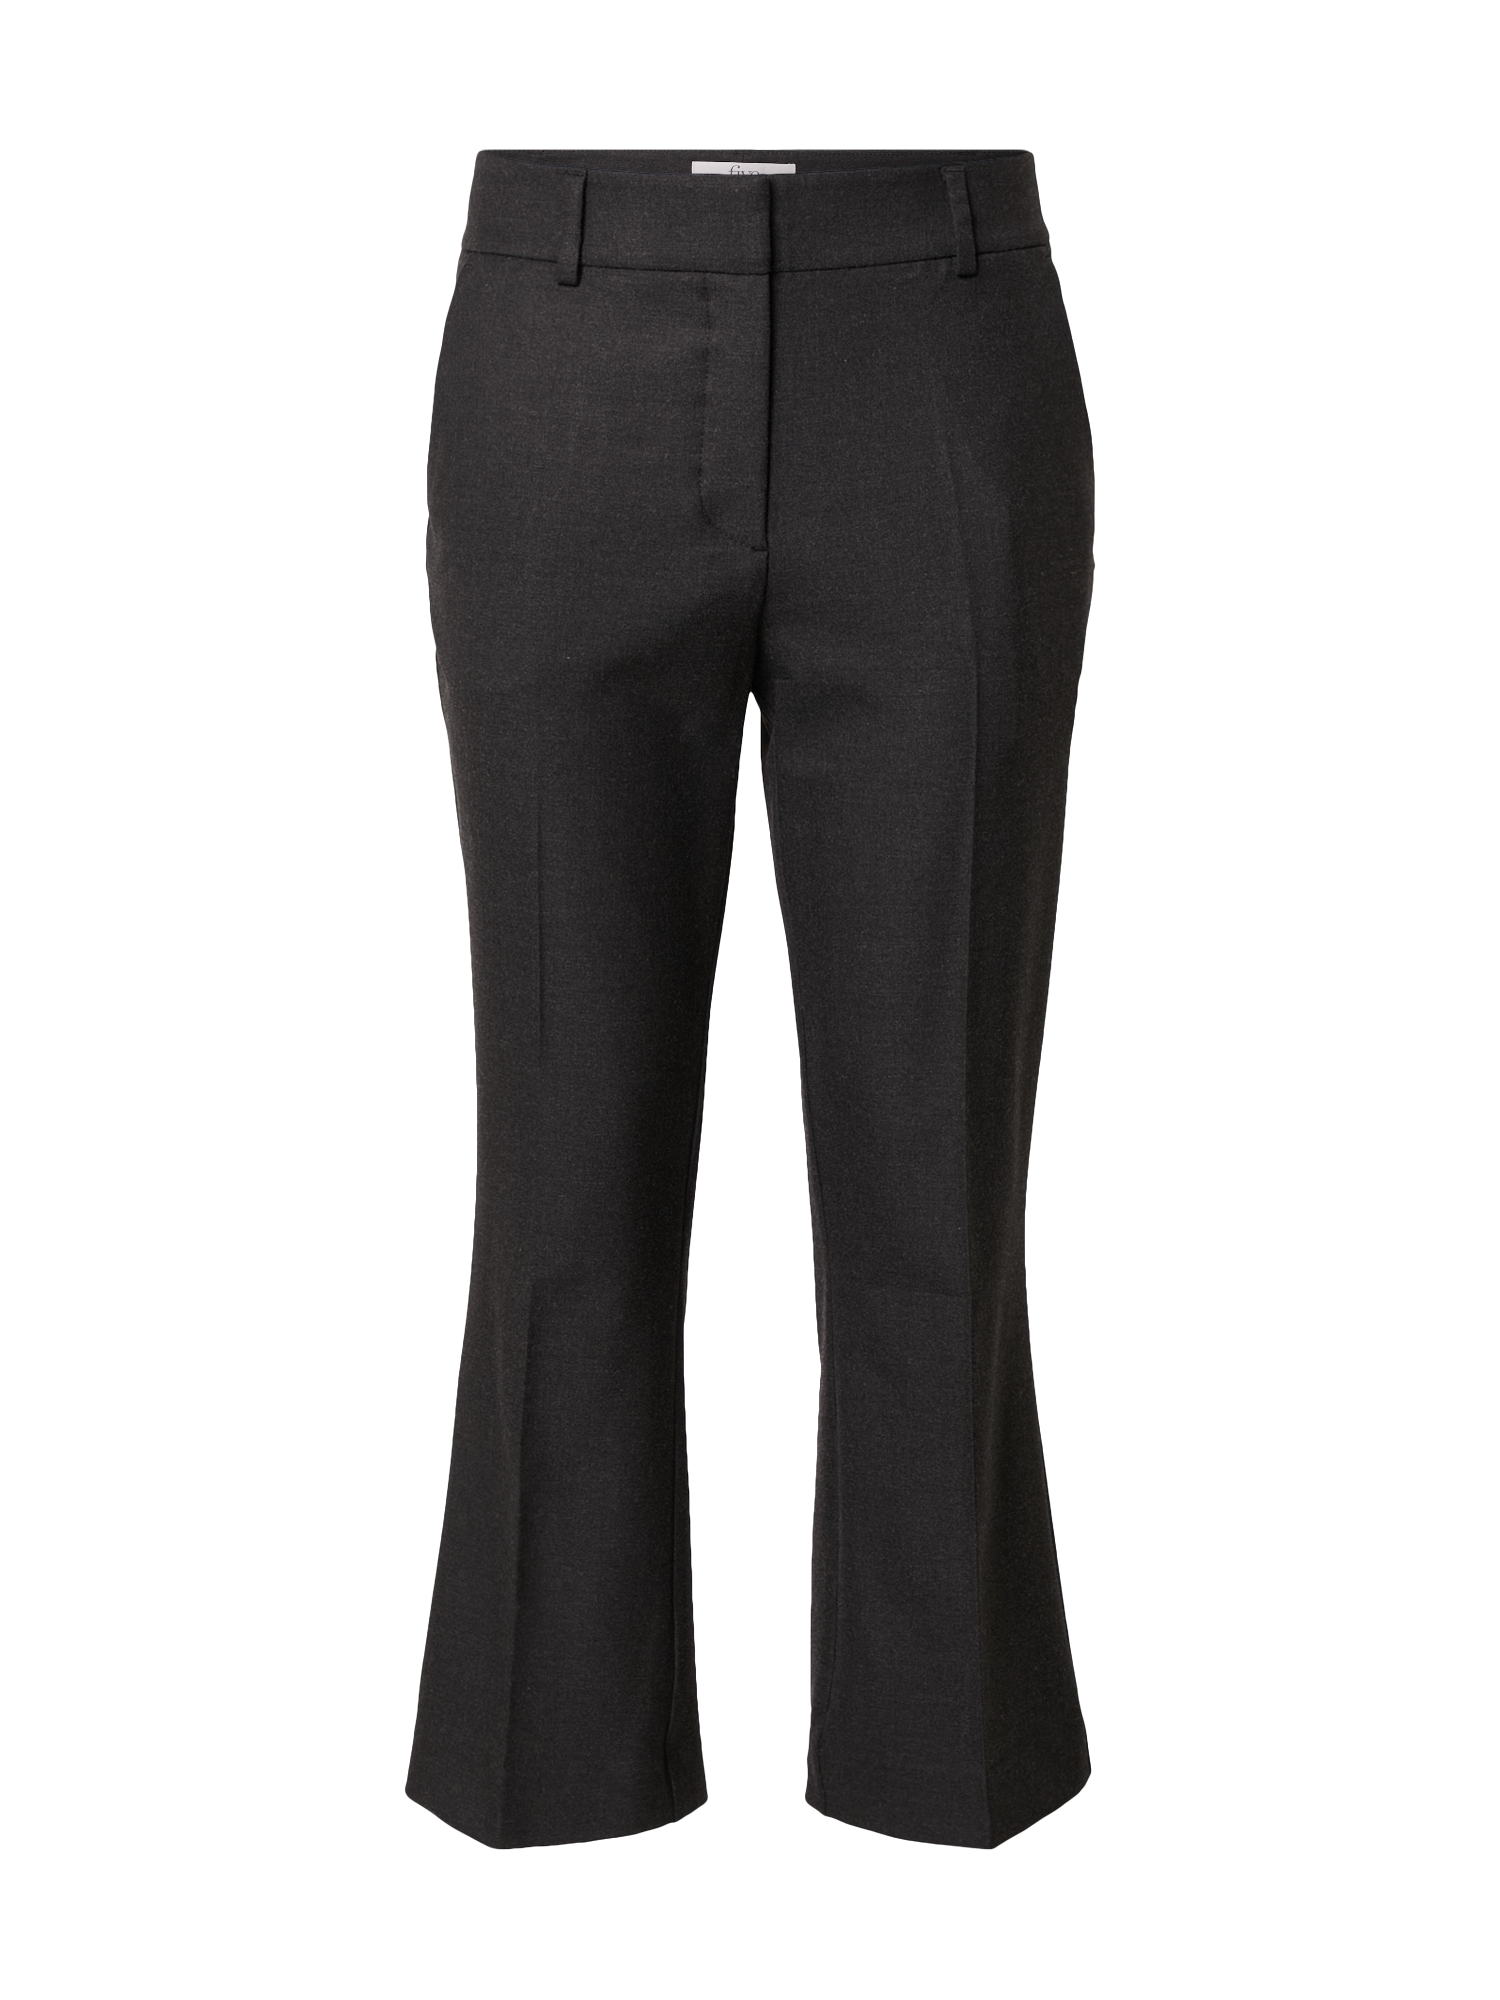 Kobiety Odzież FIVEUNITS Spodnie w kant Clara w kolorze Ciemnoszarym 